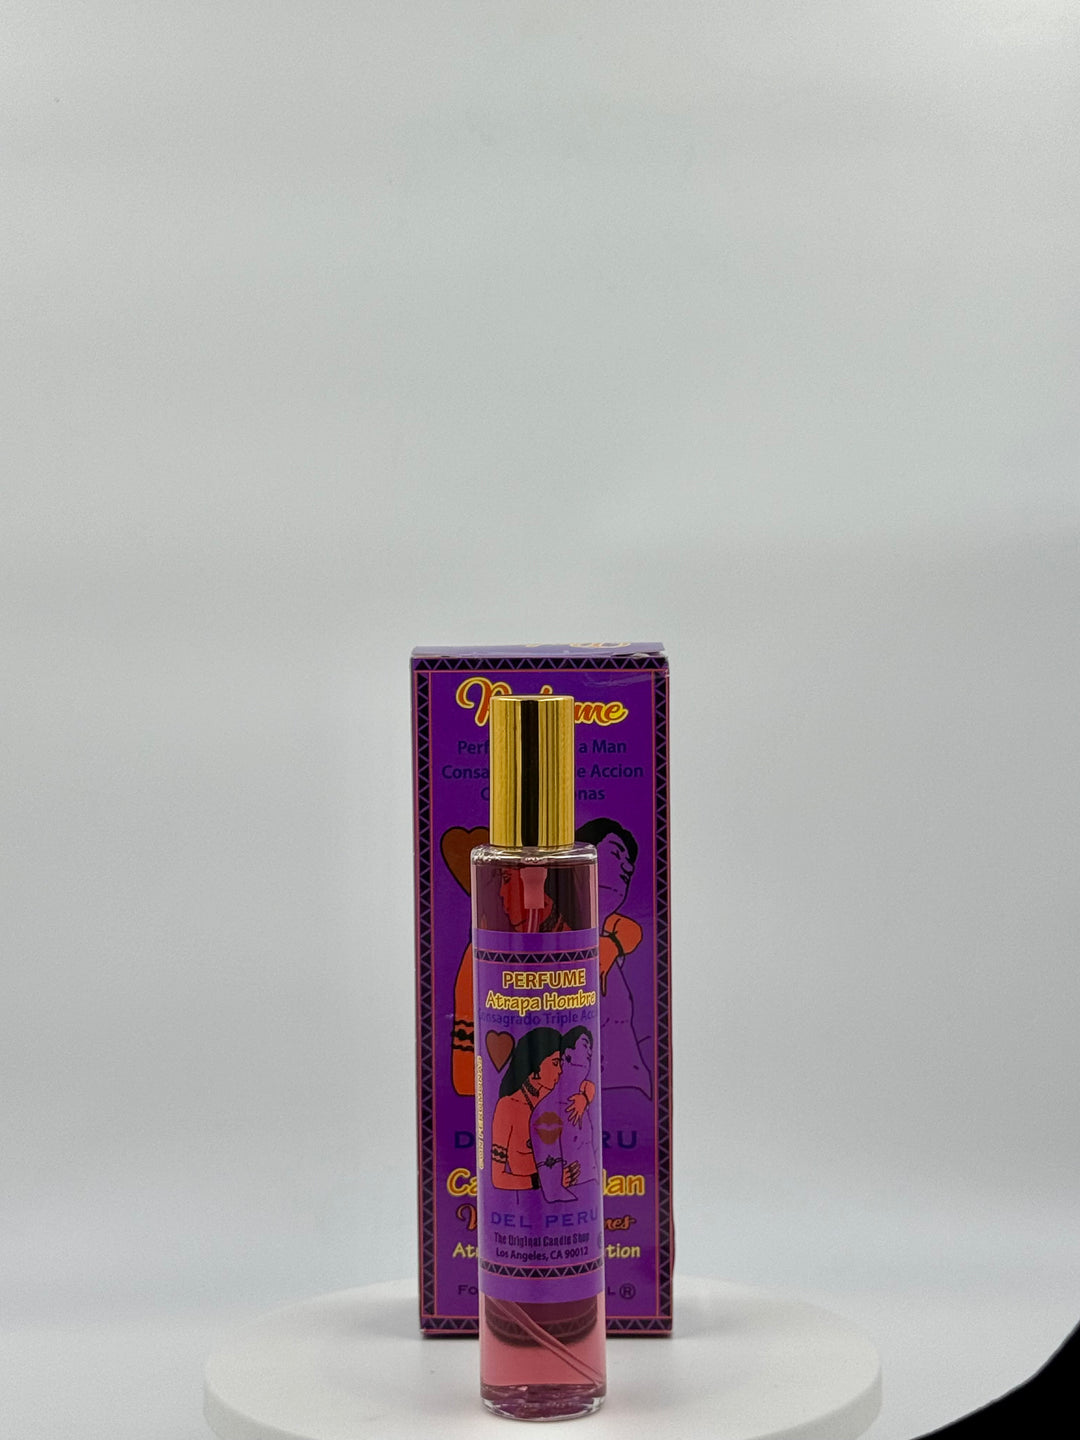 ATRAPA HOMBRE -Perfume